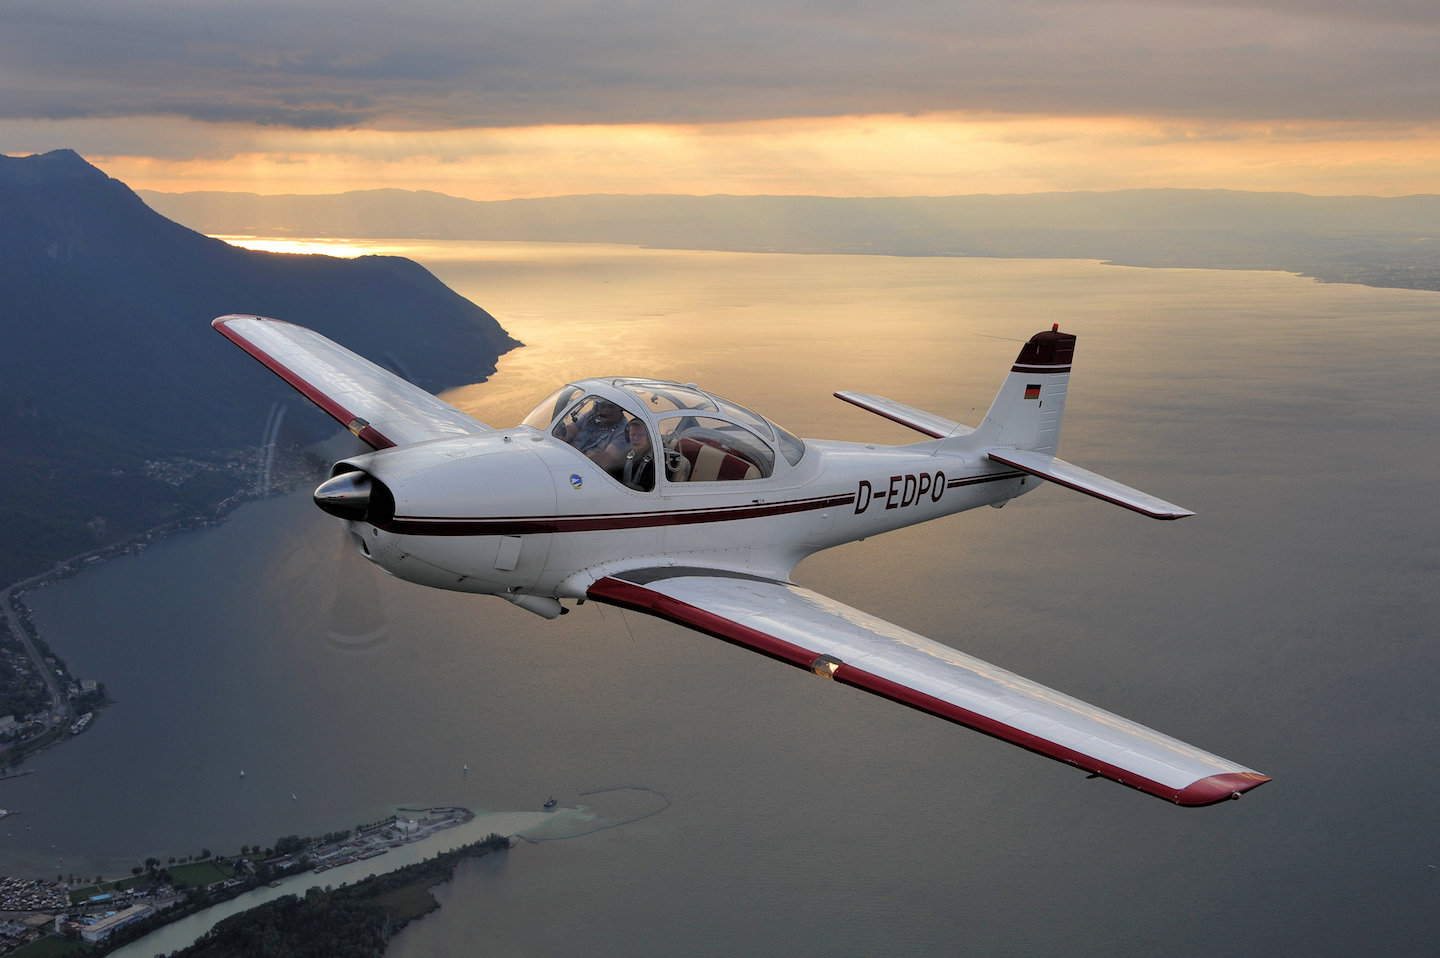 Wir danken unserem Fliegerfreund Joe Riemensberger für die phantastischen Luftaufnahmen über dem Genfer See.